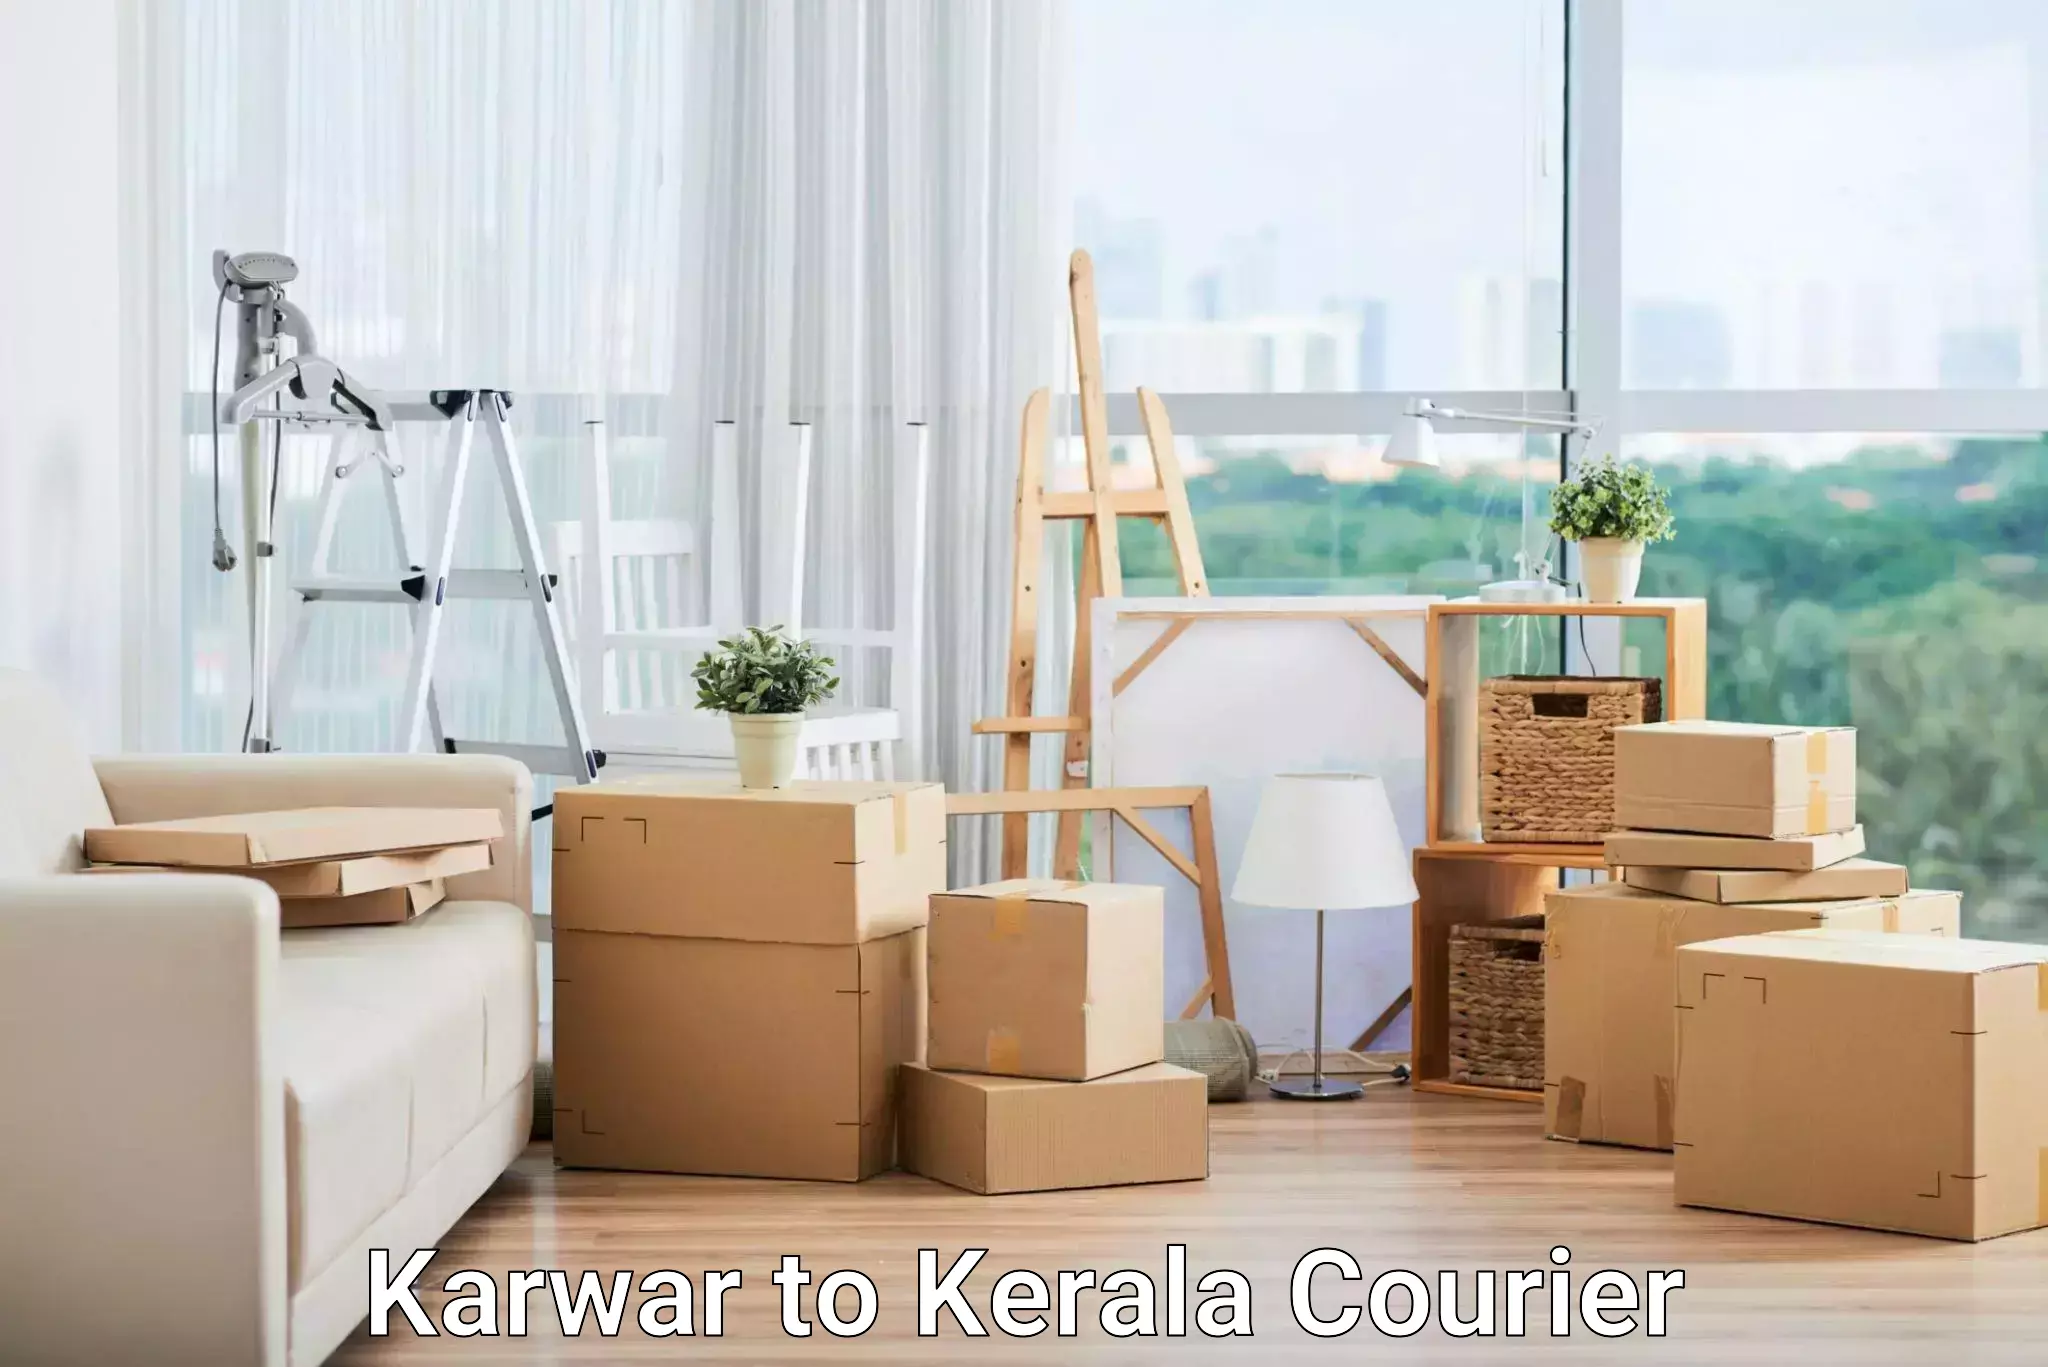 Urban courier service Karwar to Puthukkad